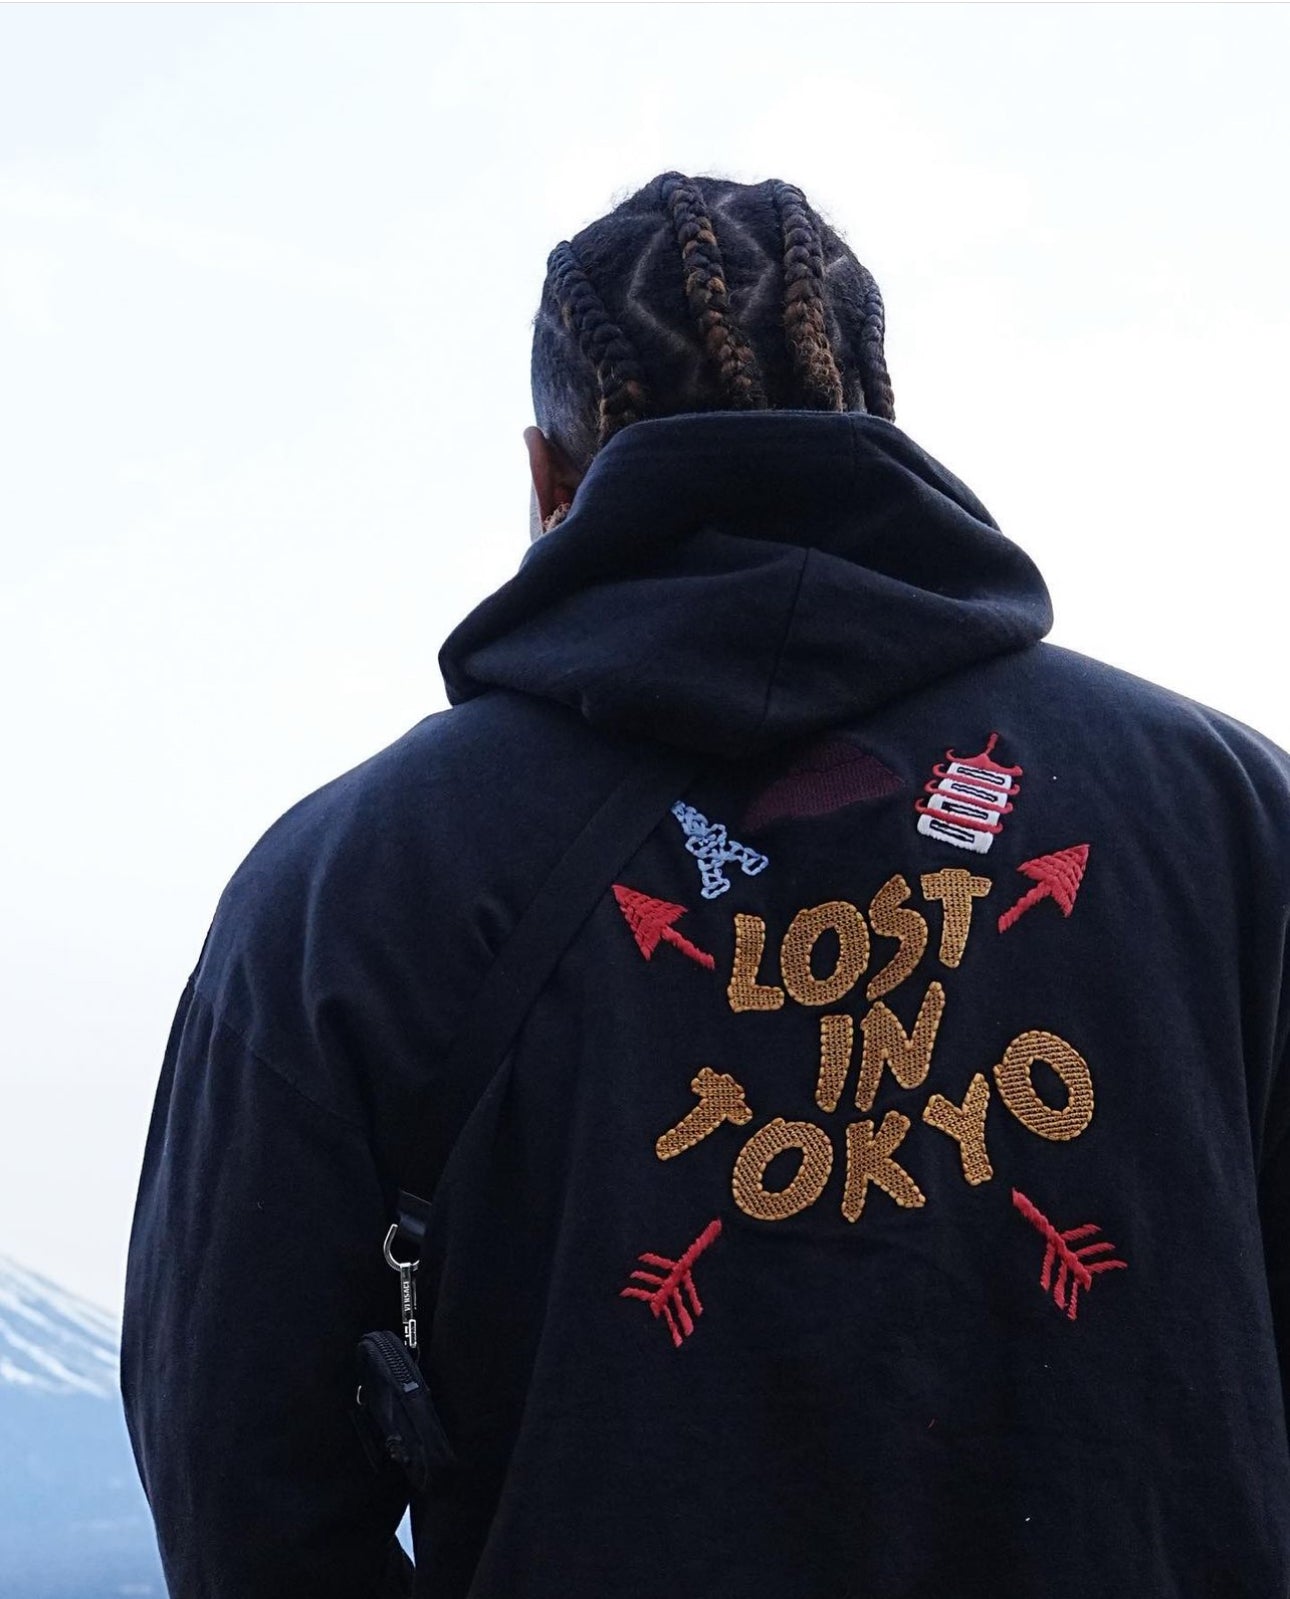 Lost in Tokyo hoodie